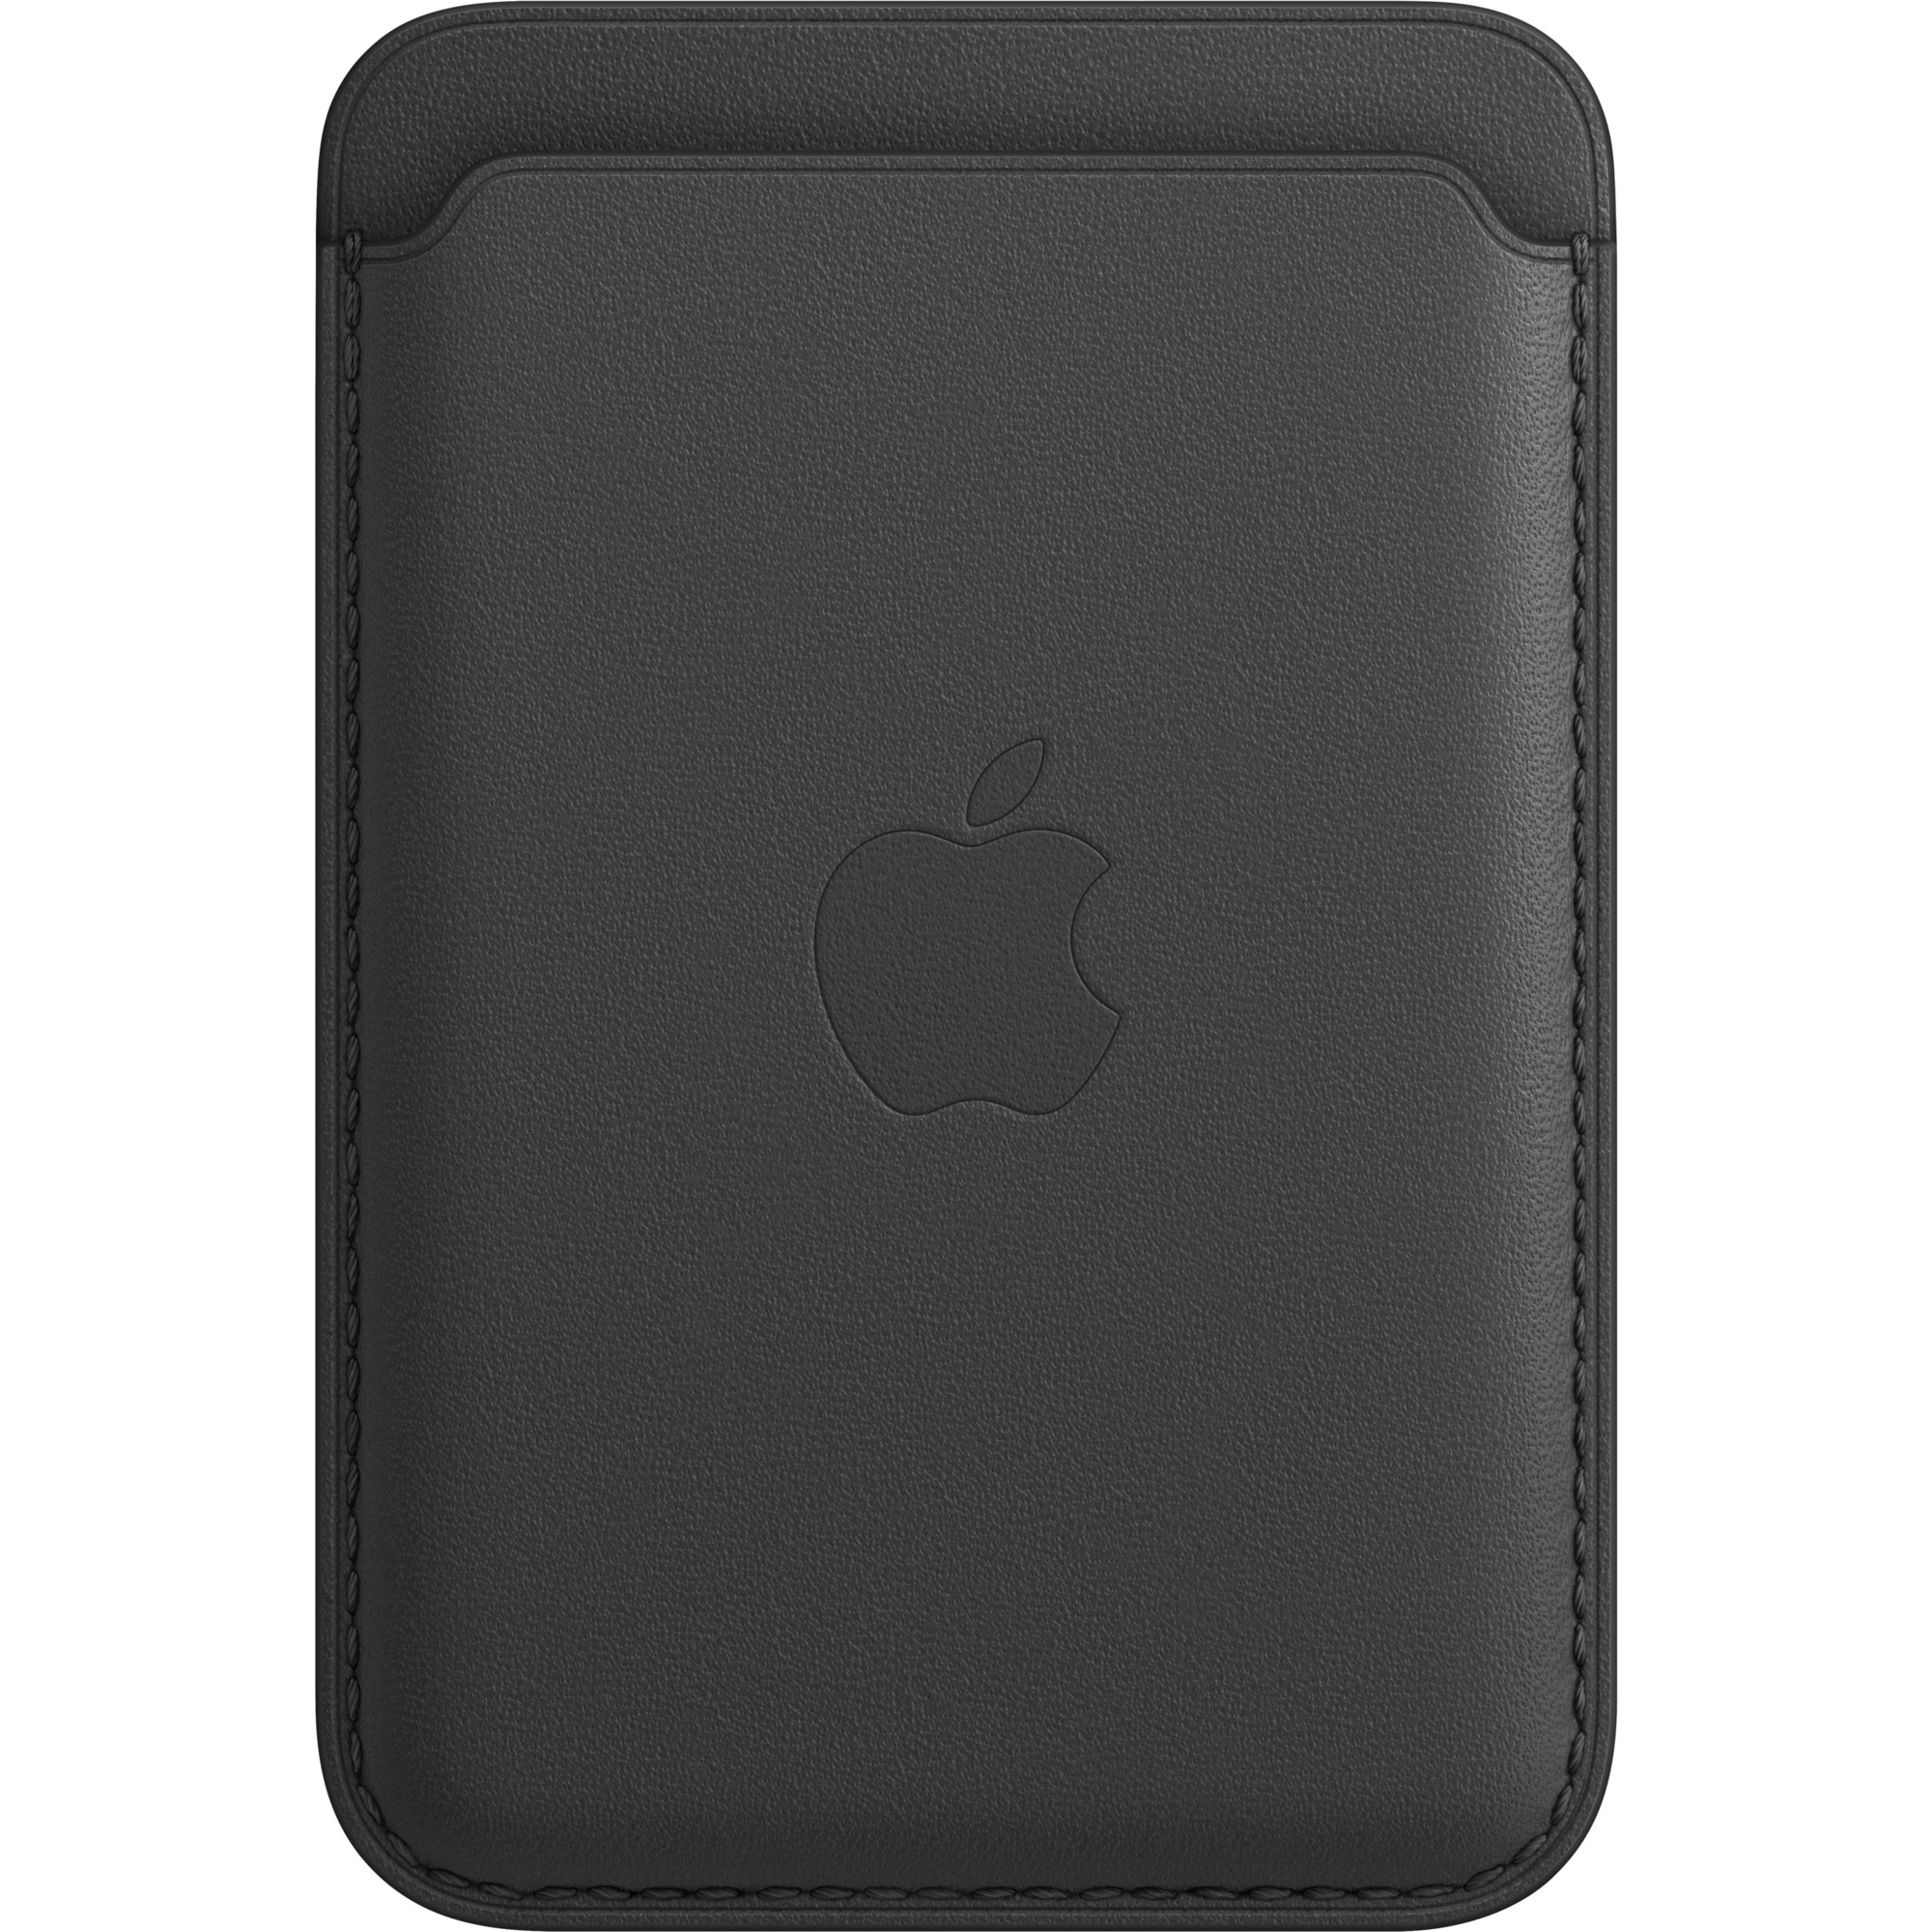 Image of Alternate - iPhone Leder Wallet mit MagSafe, Schutzhülle online einkaufen bei Alternate